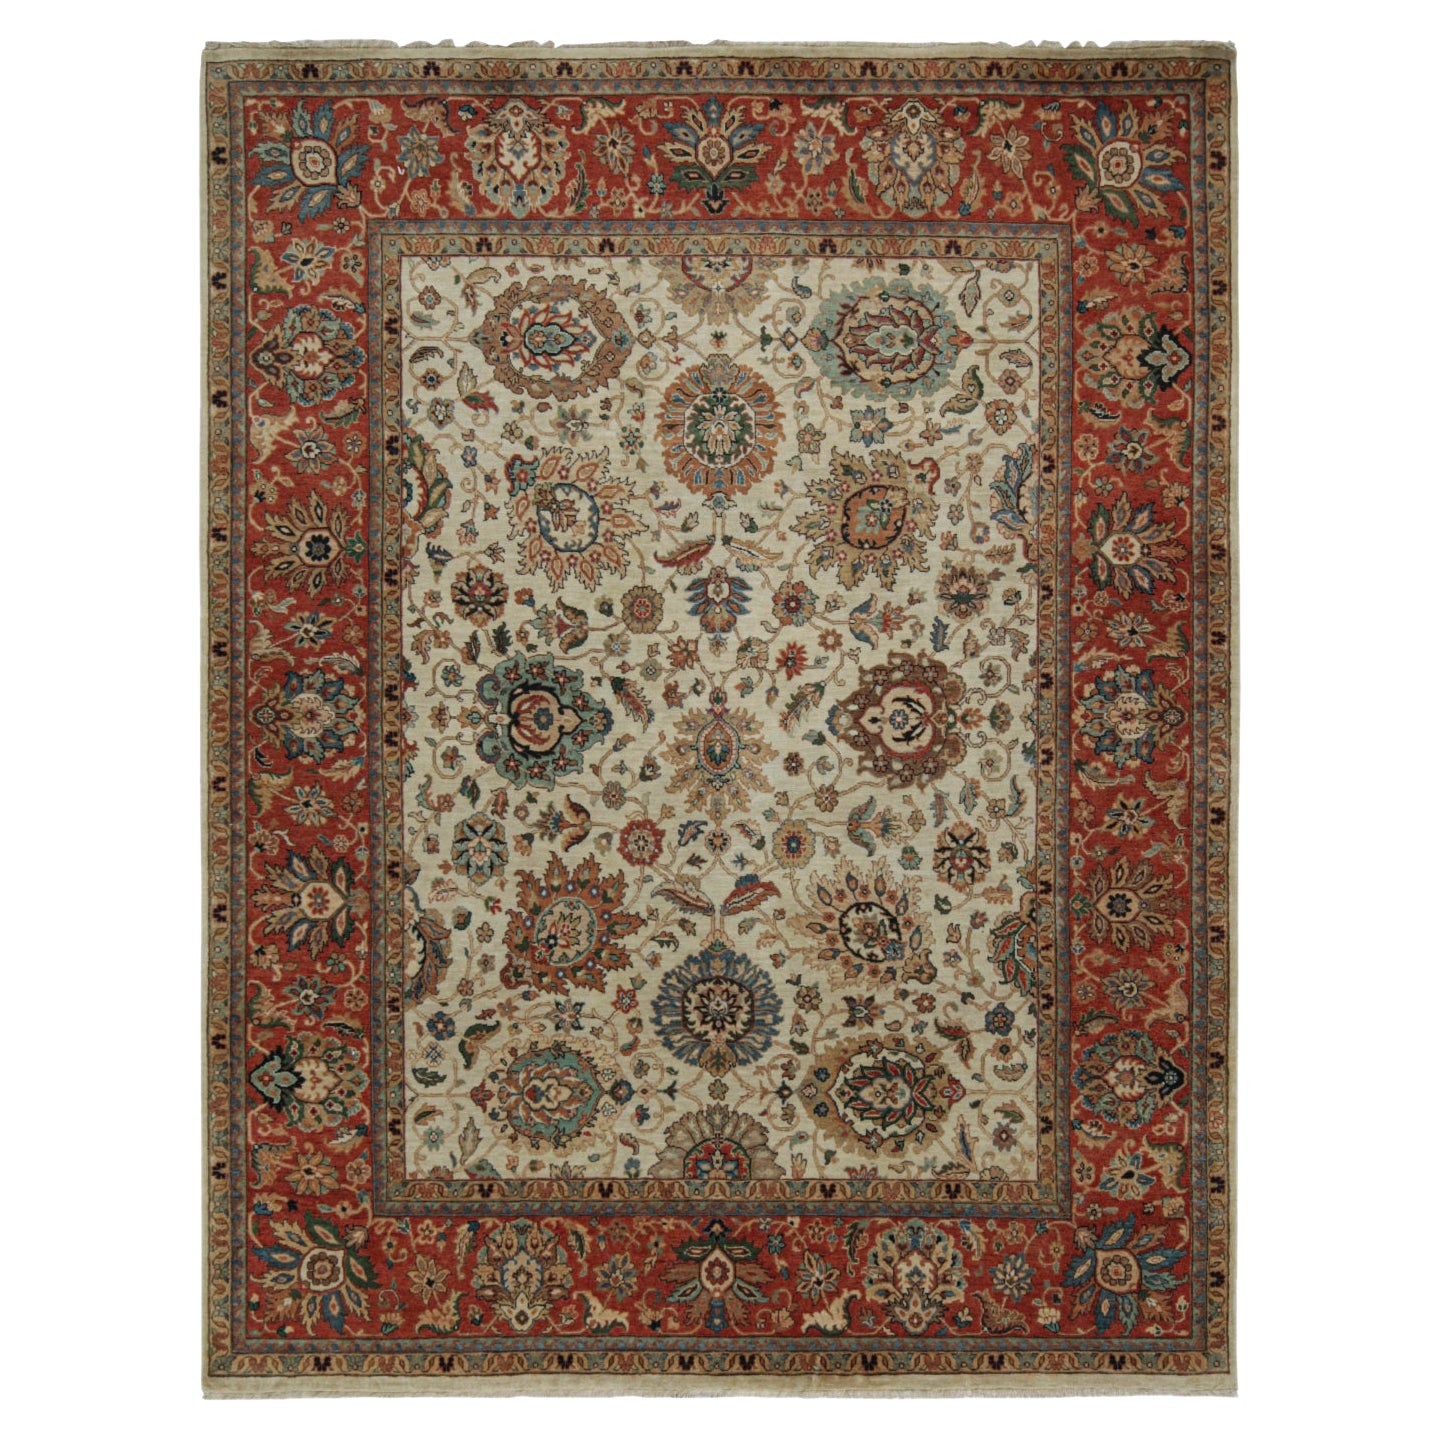 Persischer Teppich von Rug & Kilim in Beige und Rot mit floralen Mustern